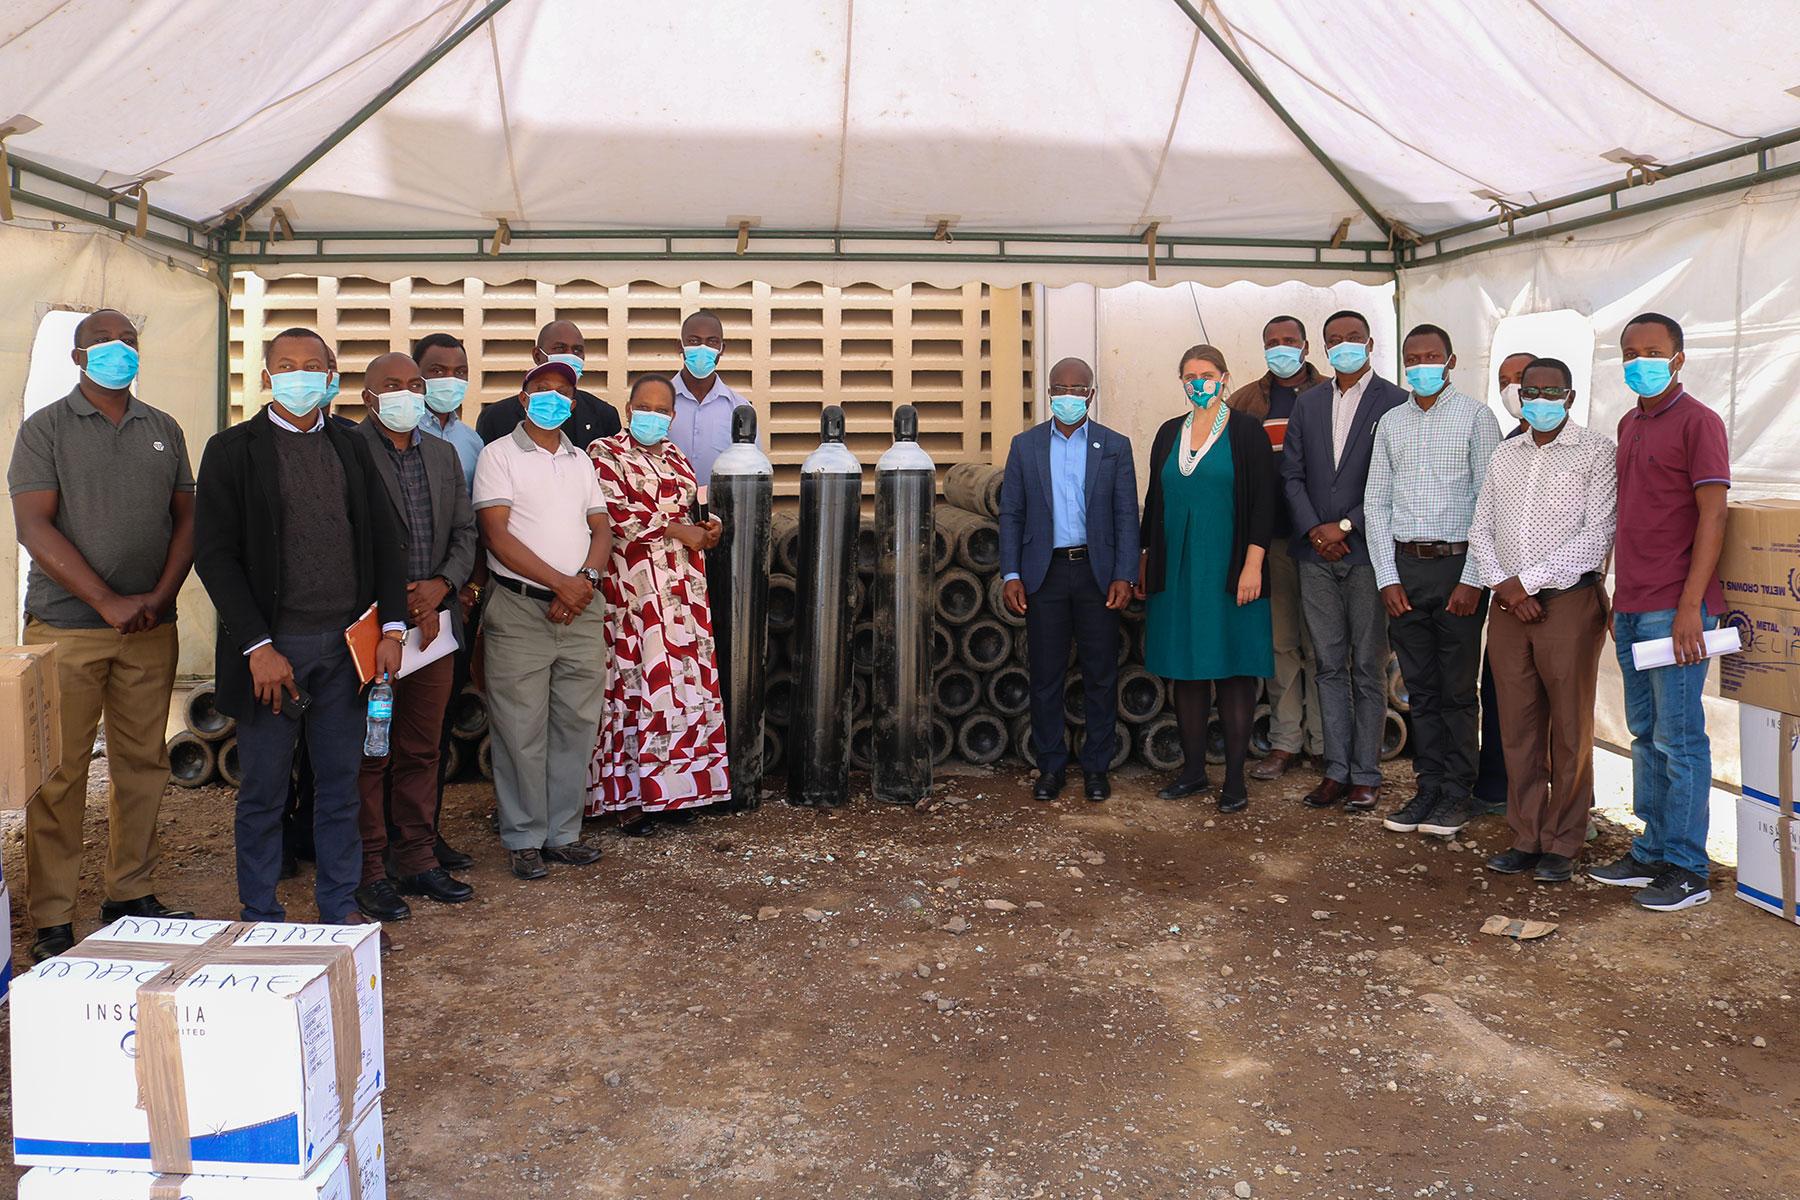 Krankenhäuser der Evangelisch-Lutherischen Kirche in Tansania erhalten 100 Sauerstoffflaschen und persönliche Schutzausrüstung von der Lutheran Mission Cooperation, um den Bedarf zu decken. Foto: Erick K. Adolph/ELKT